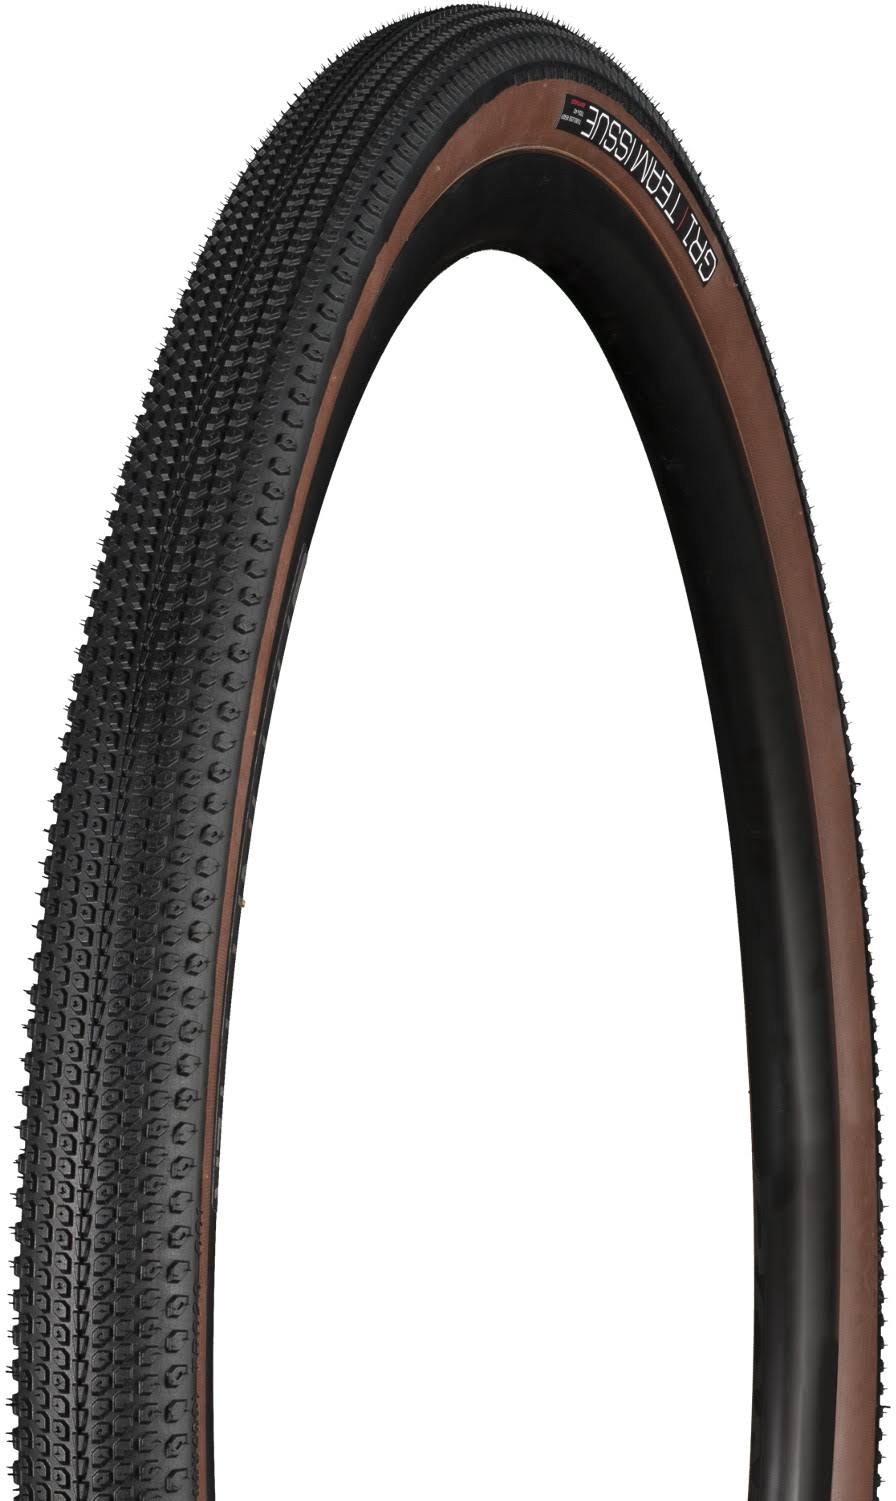 Bontrager GR1 Team Issue Gravel Tyre Black/Brown